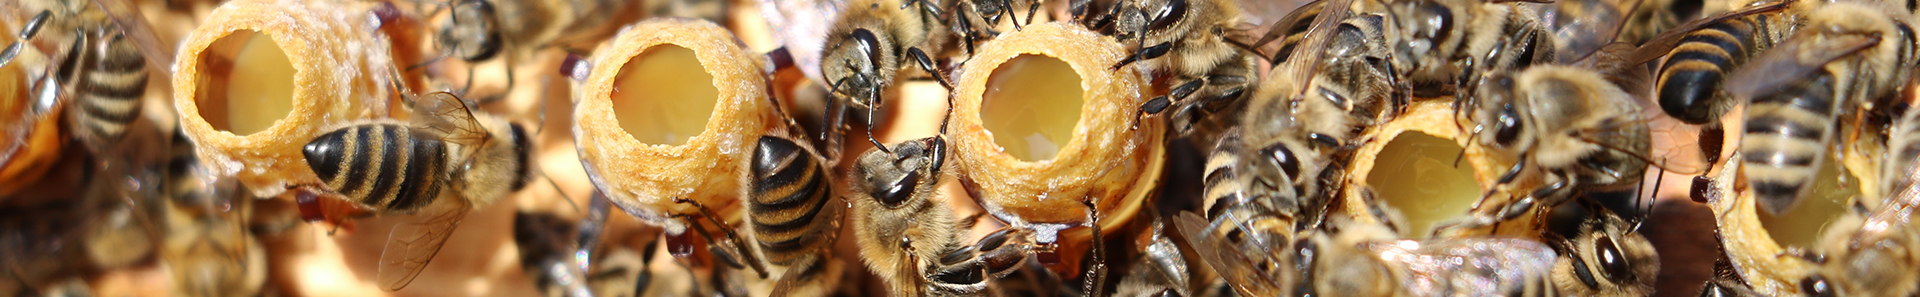 Teherbeesés friss tiszta méhpempővel